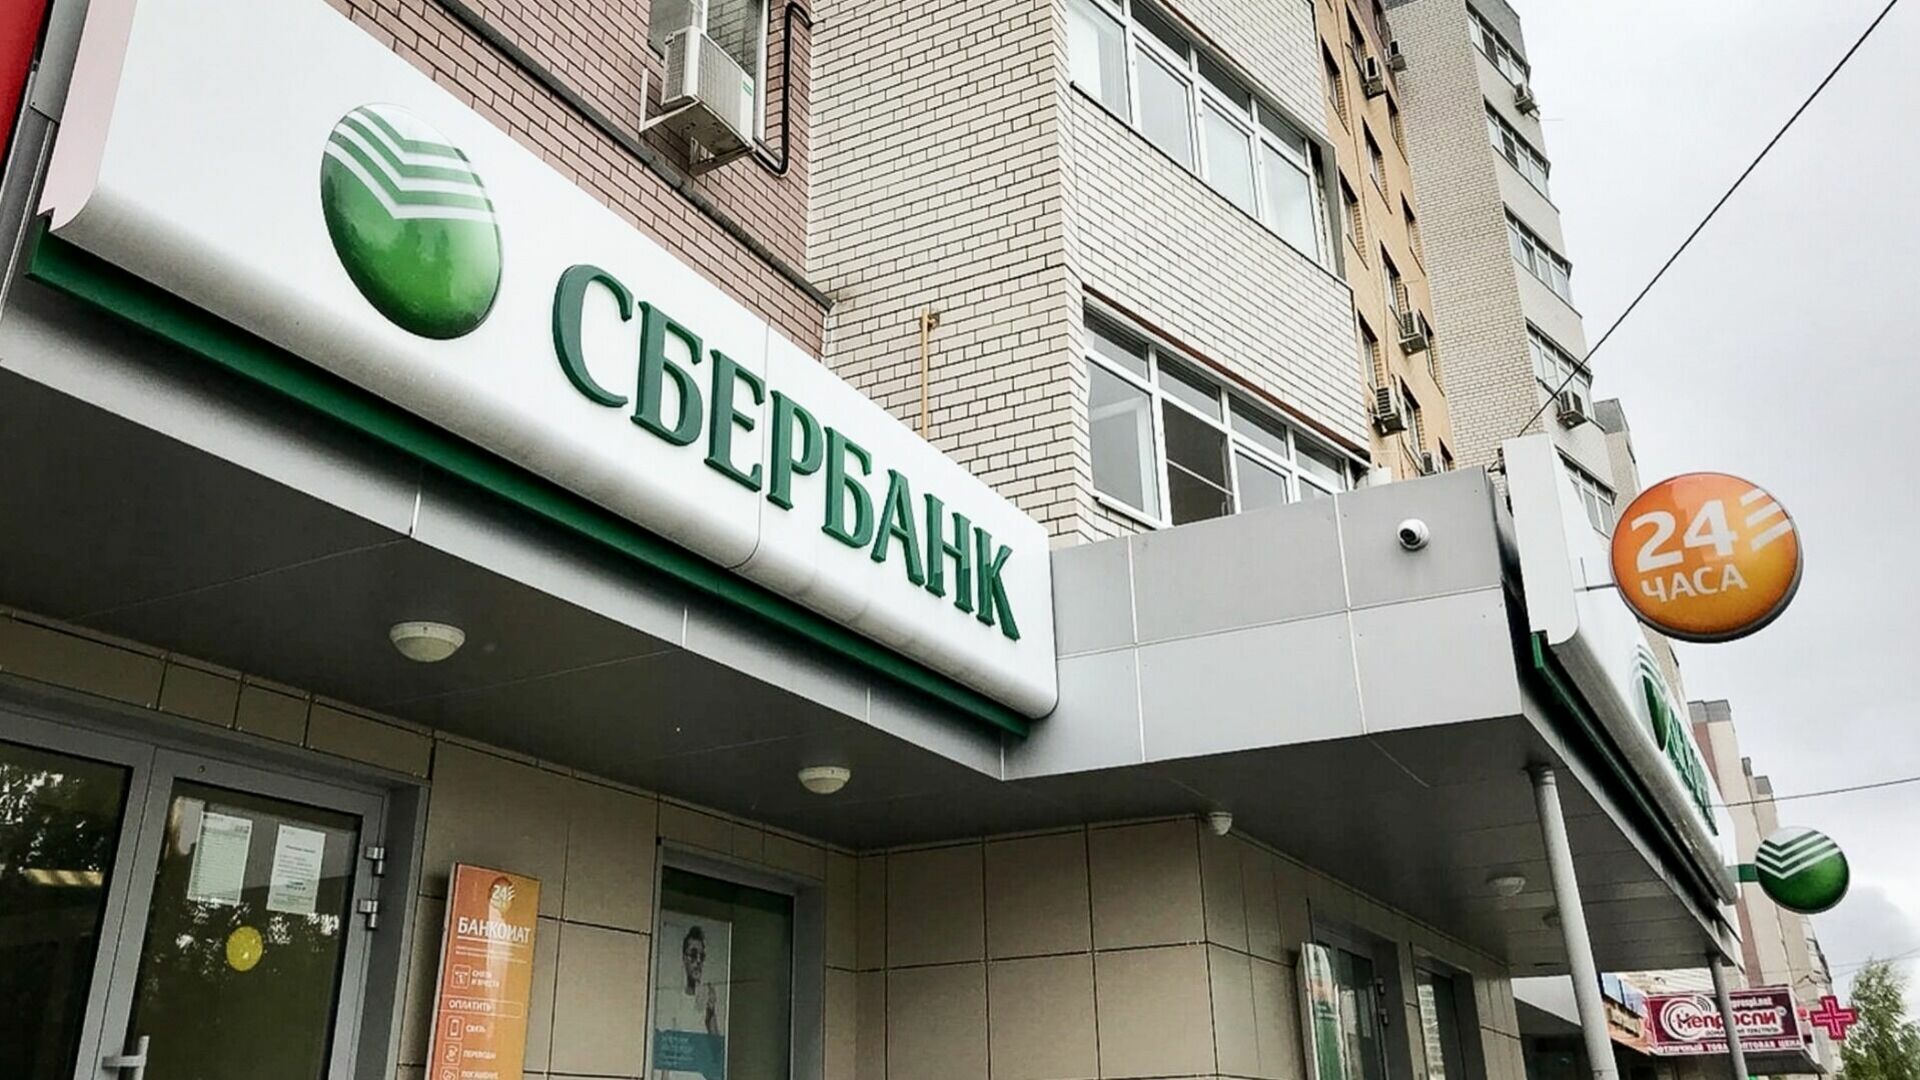 Сбер проанализировал будущее климатической повестки в банках России и других стран